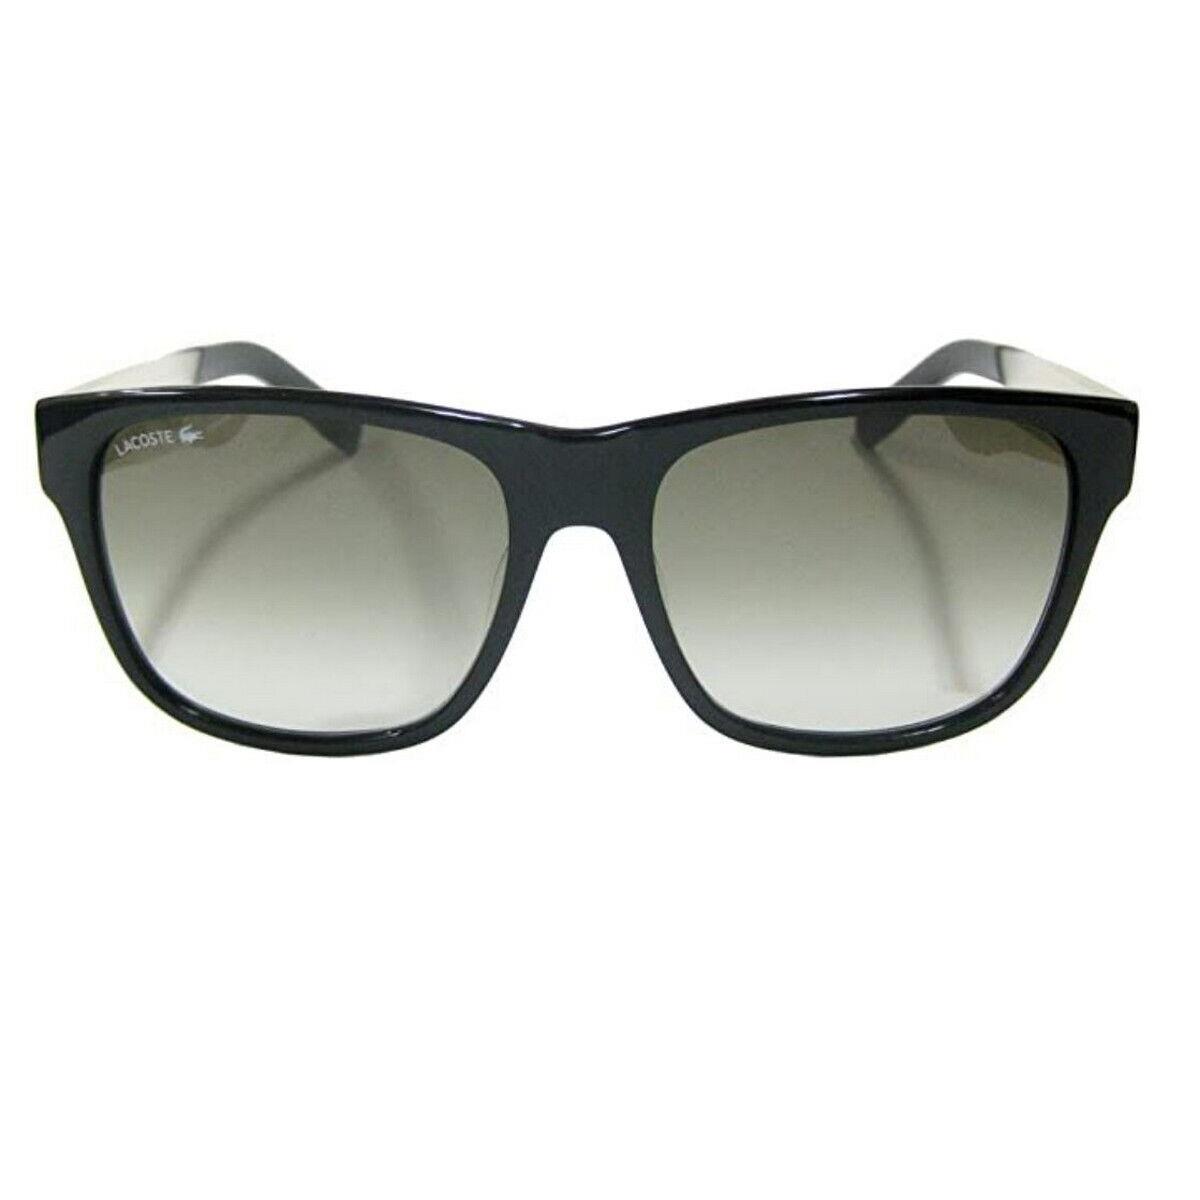 Lacoste L835SA-001-56 Sunglasses Size 56mm 135mm 16 Black Sunglasses Sungl